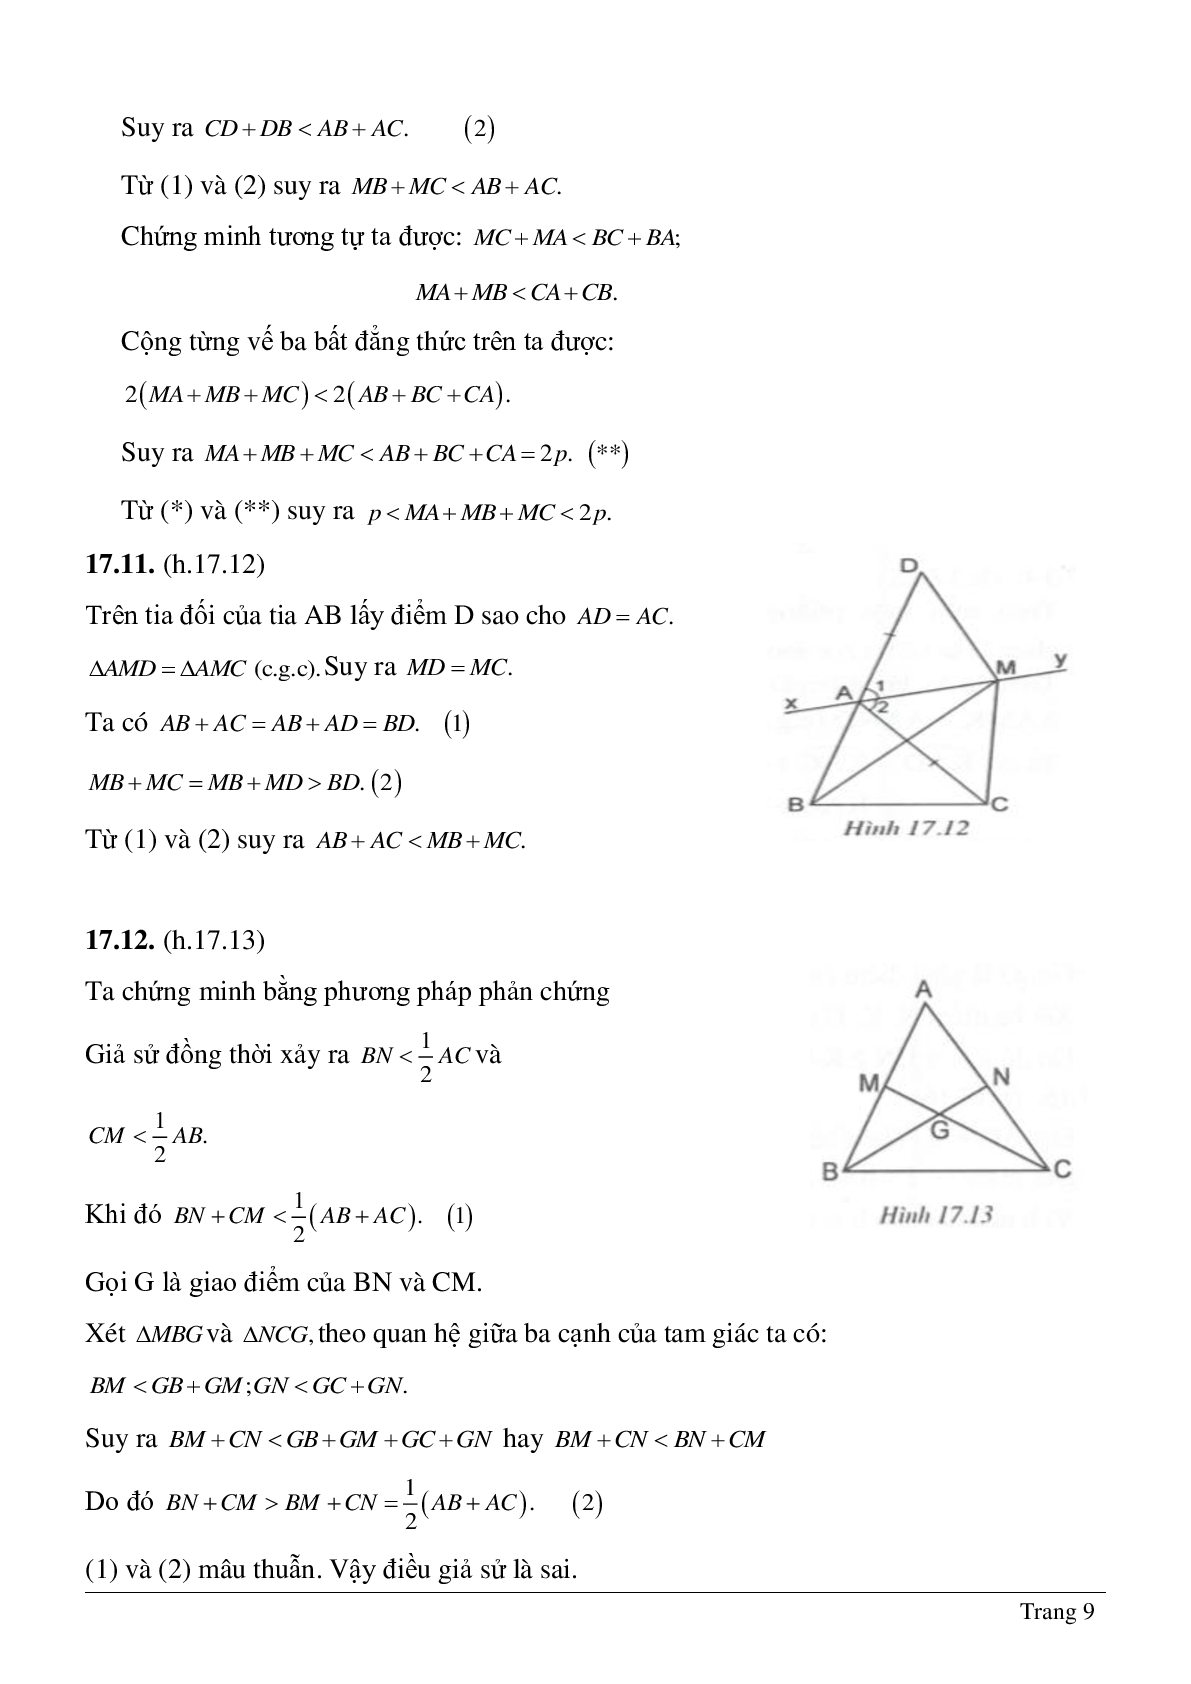 Lý thuyết và hệ thống bài tập tự luyện về Quan hệ giữa ba cạnh của một tam giác hay nhất (trang 9)